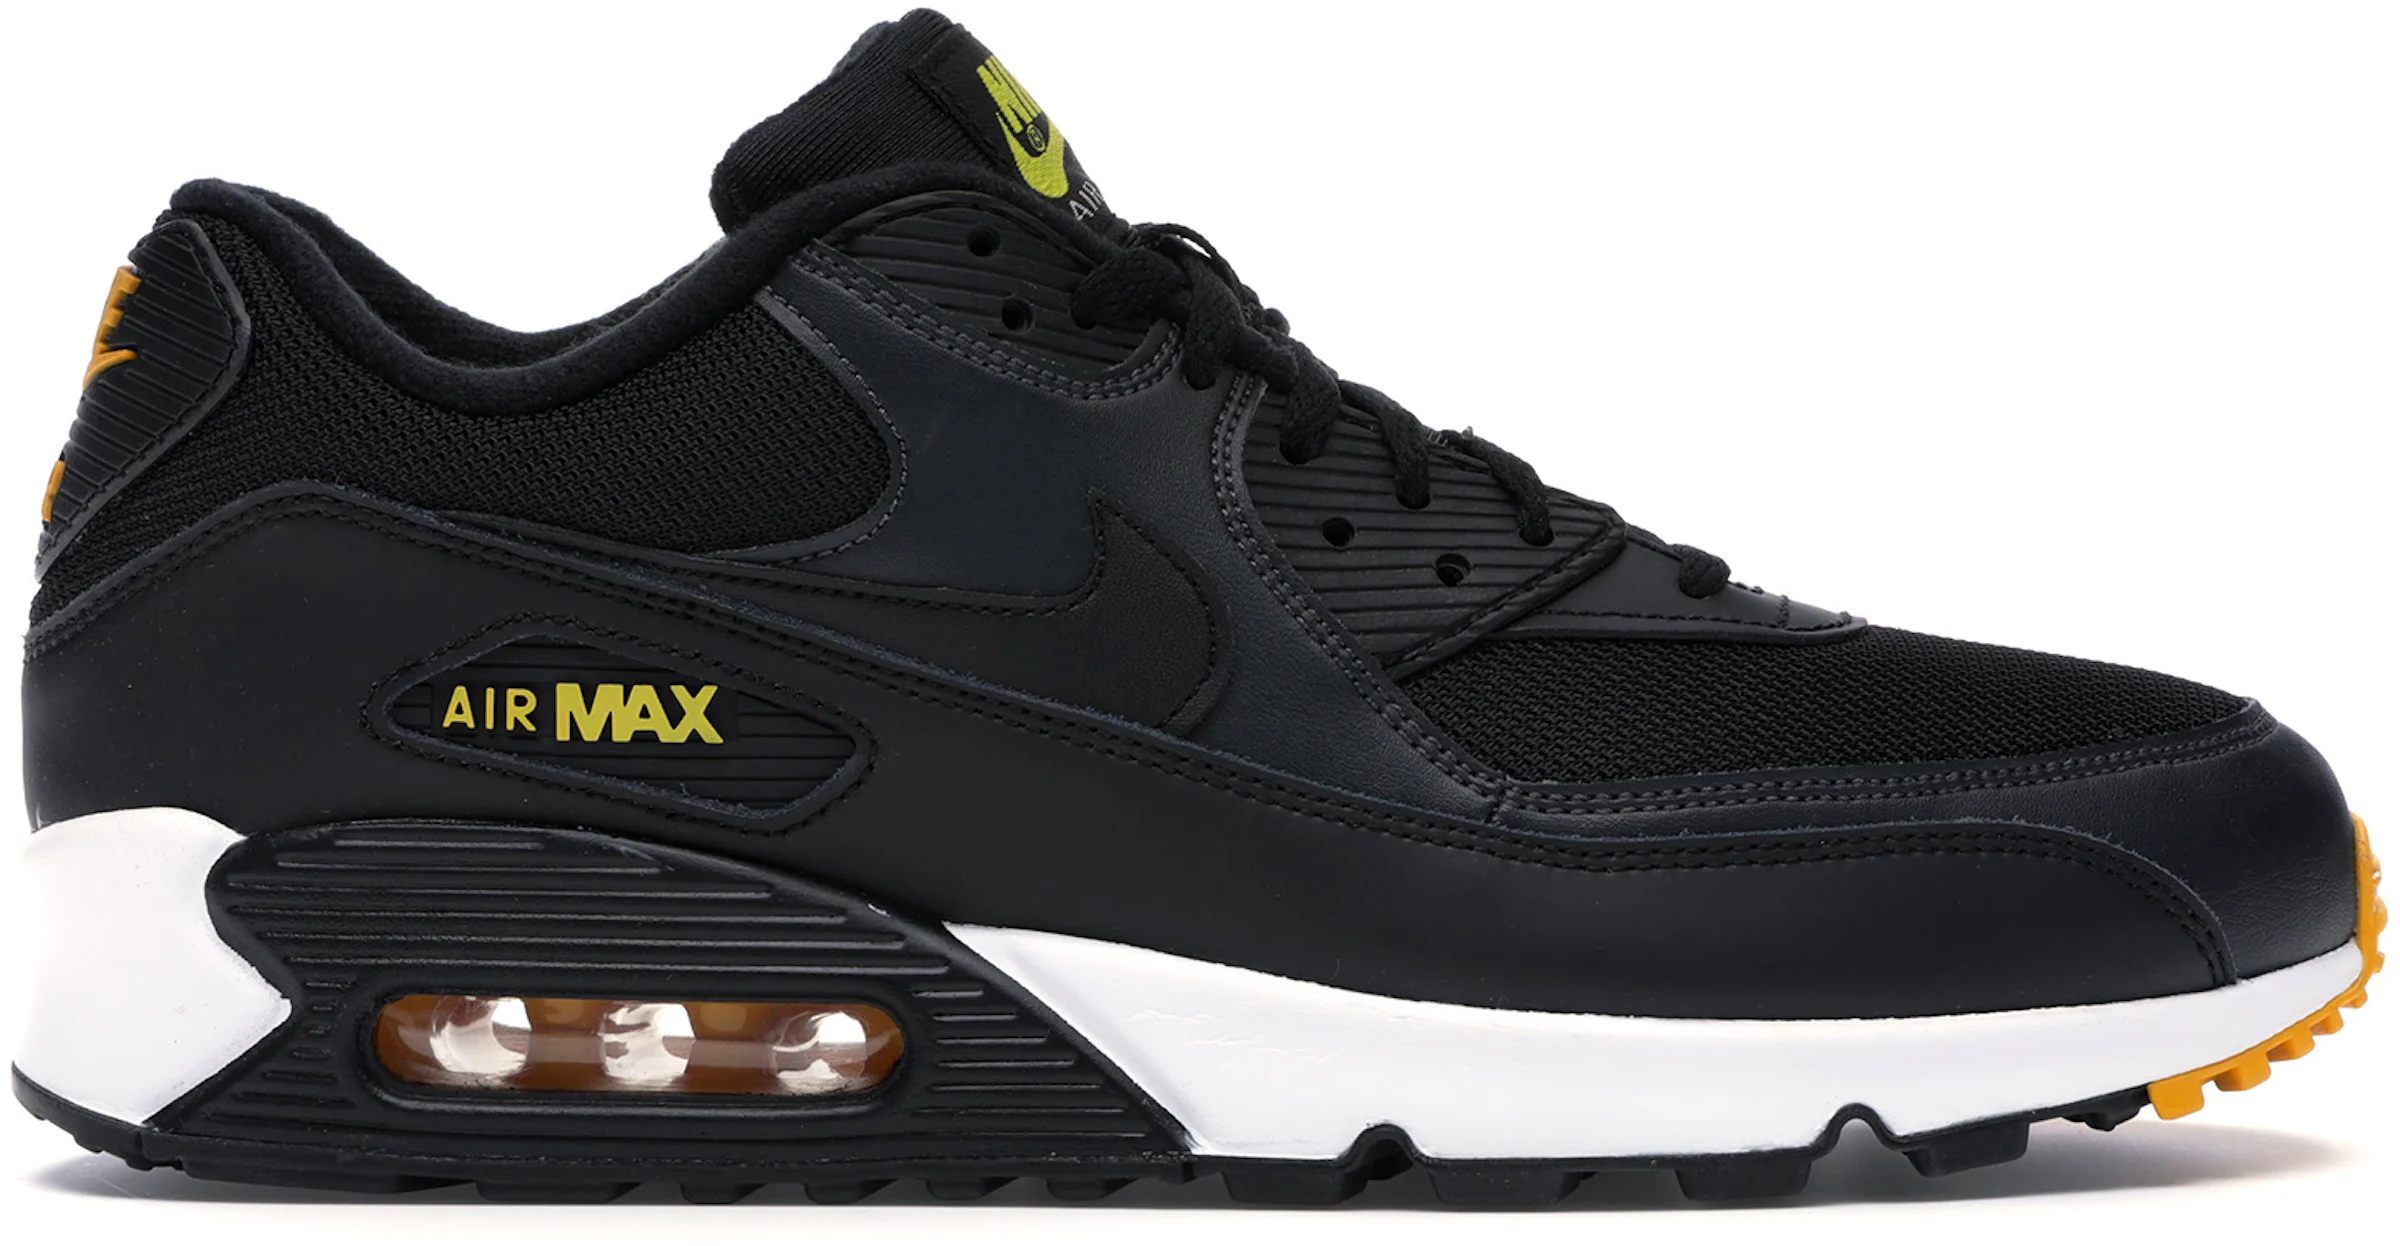 Nike Air Max 90 Negras/Amarillas en OFERTA por 47,90€